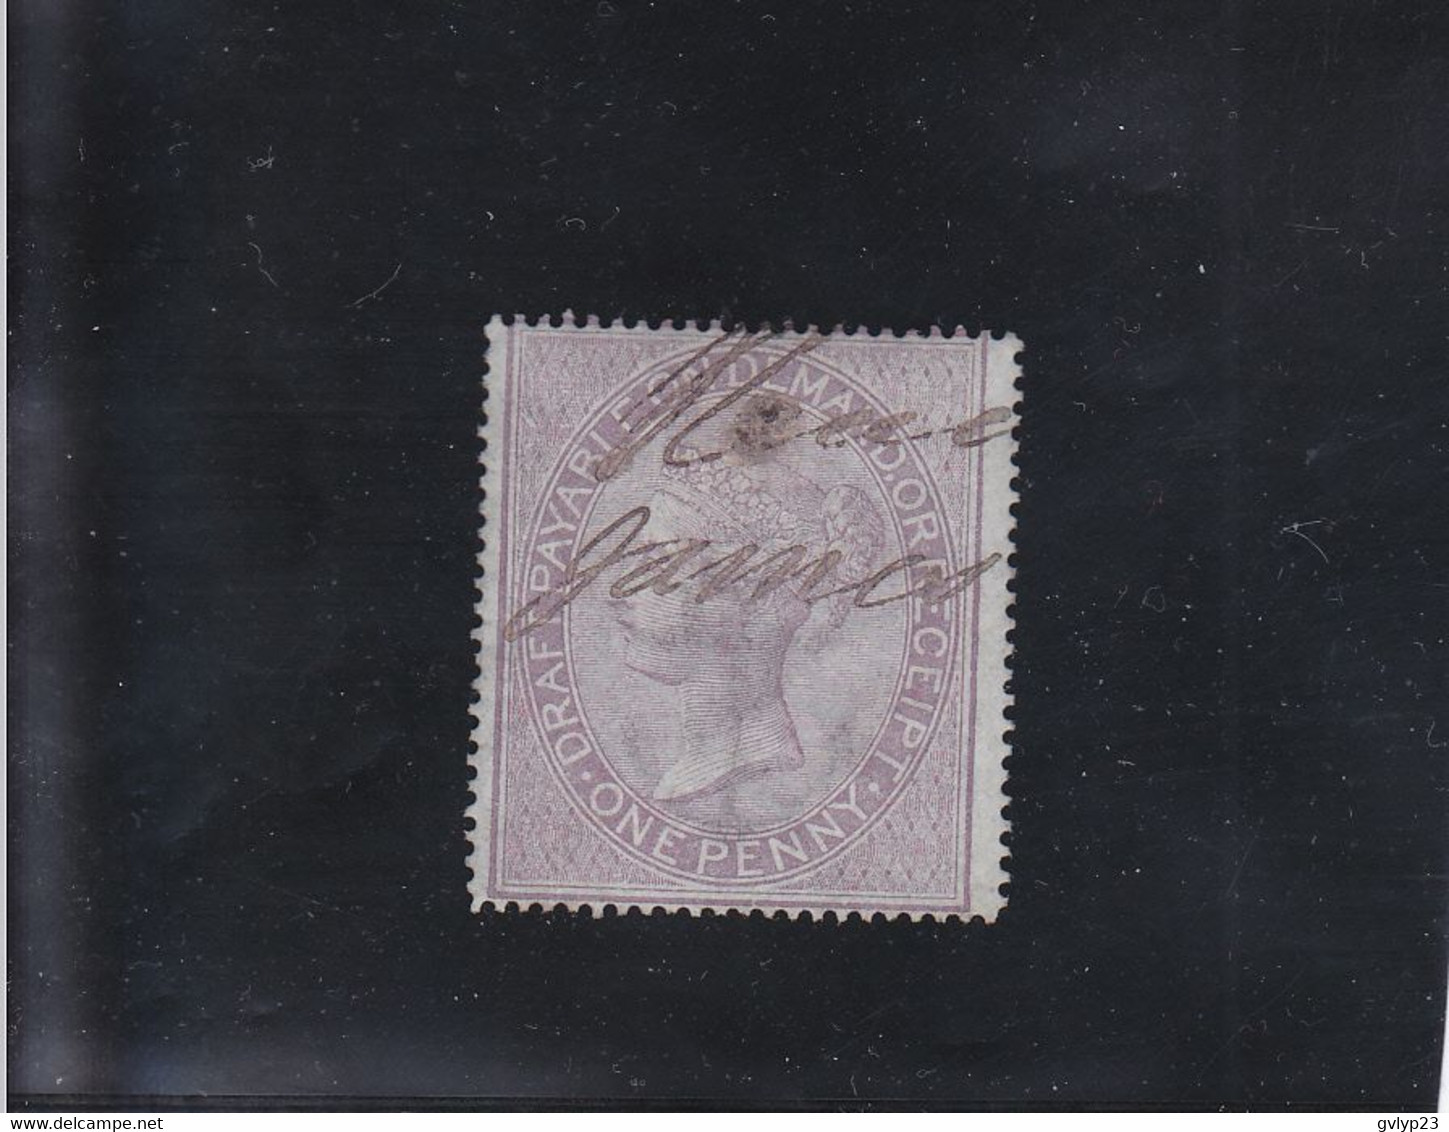 TIMBRES FISCAUX POSTAUX VICTORIA OBLITéRé N° 1 YVERT ET TELLIER 1862 - Revenue Stamps